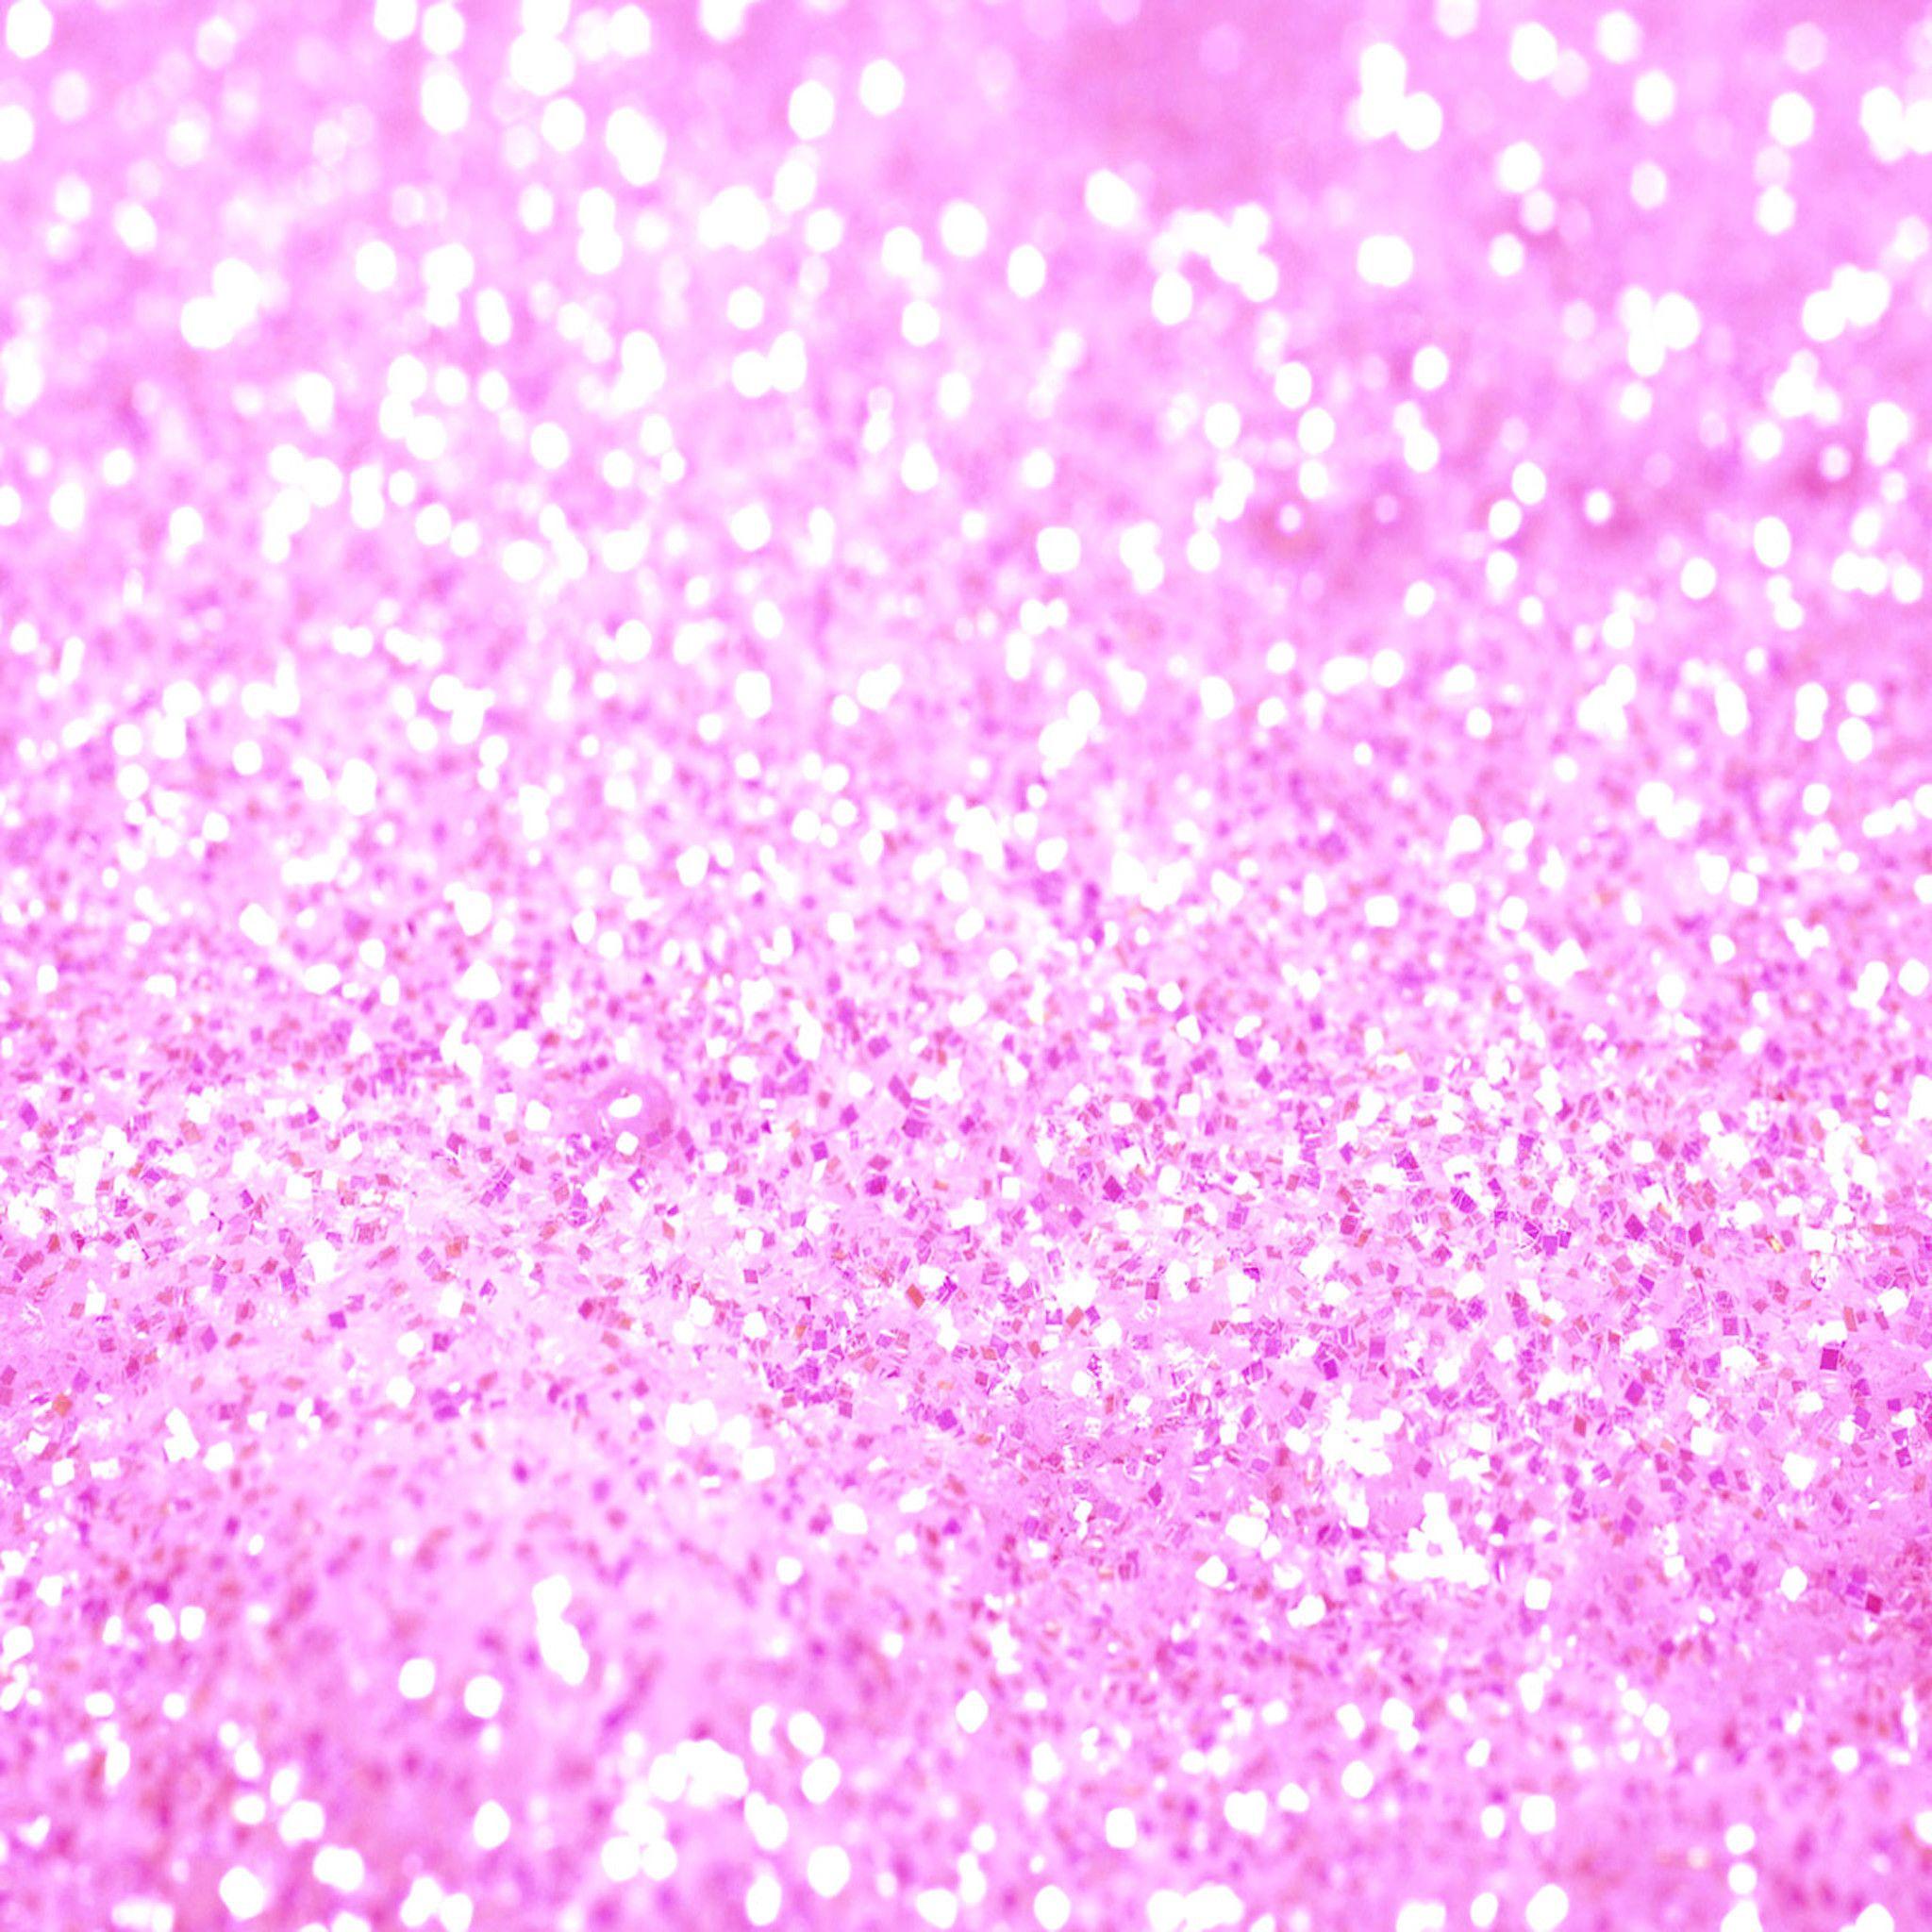 Chính vì tình yêu của bạn với màu hồng rực rỡ và bùng cháy, Sparkly Pink Backgrounds sẽ là lựa chọn hoàn hảo cho bạn. Bức ảnh liên quan sẽ khiến bạn lấp lánh và thăng hoa với những hòn đá cẩm thạch vàng đẹp nhất.